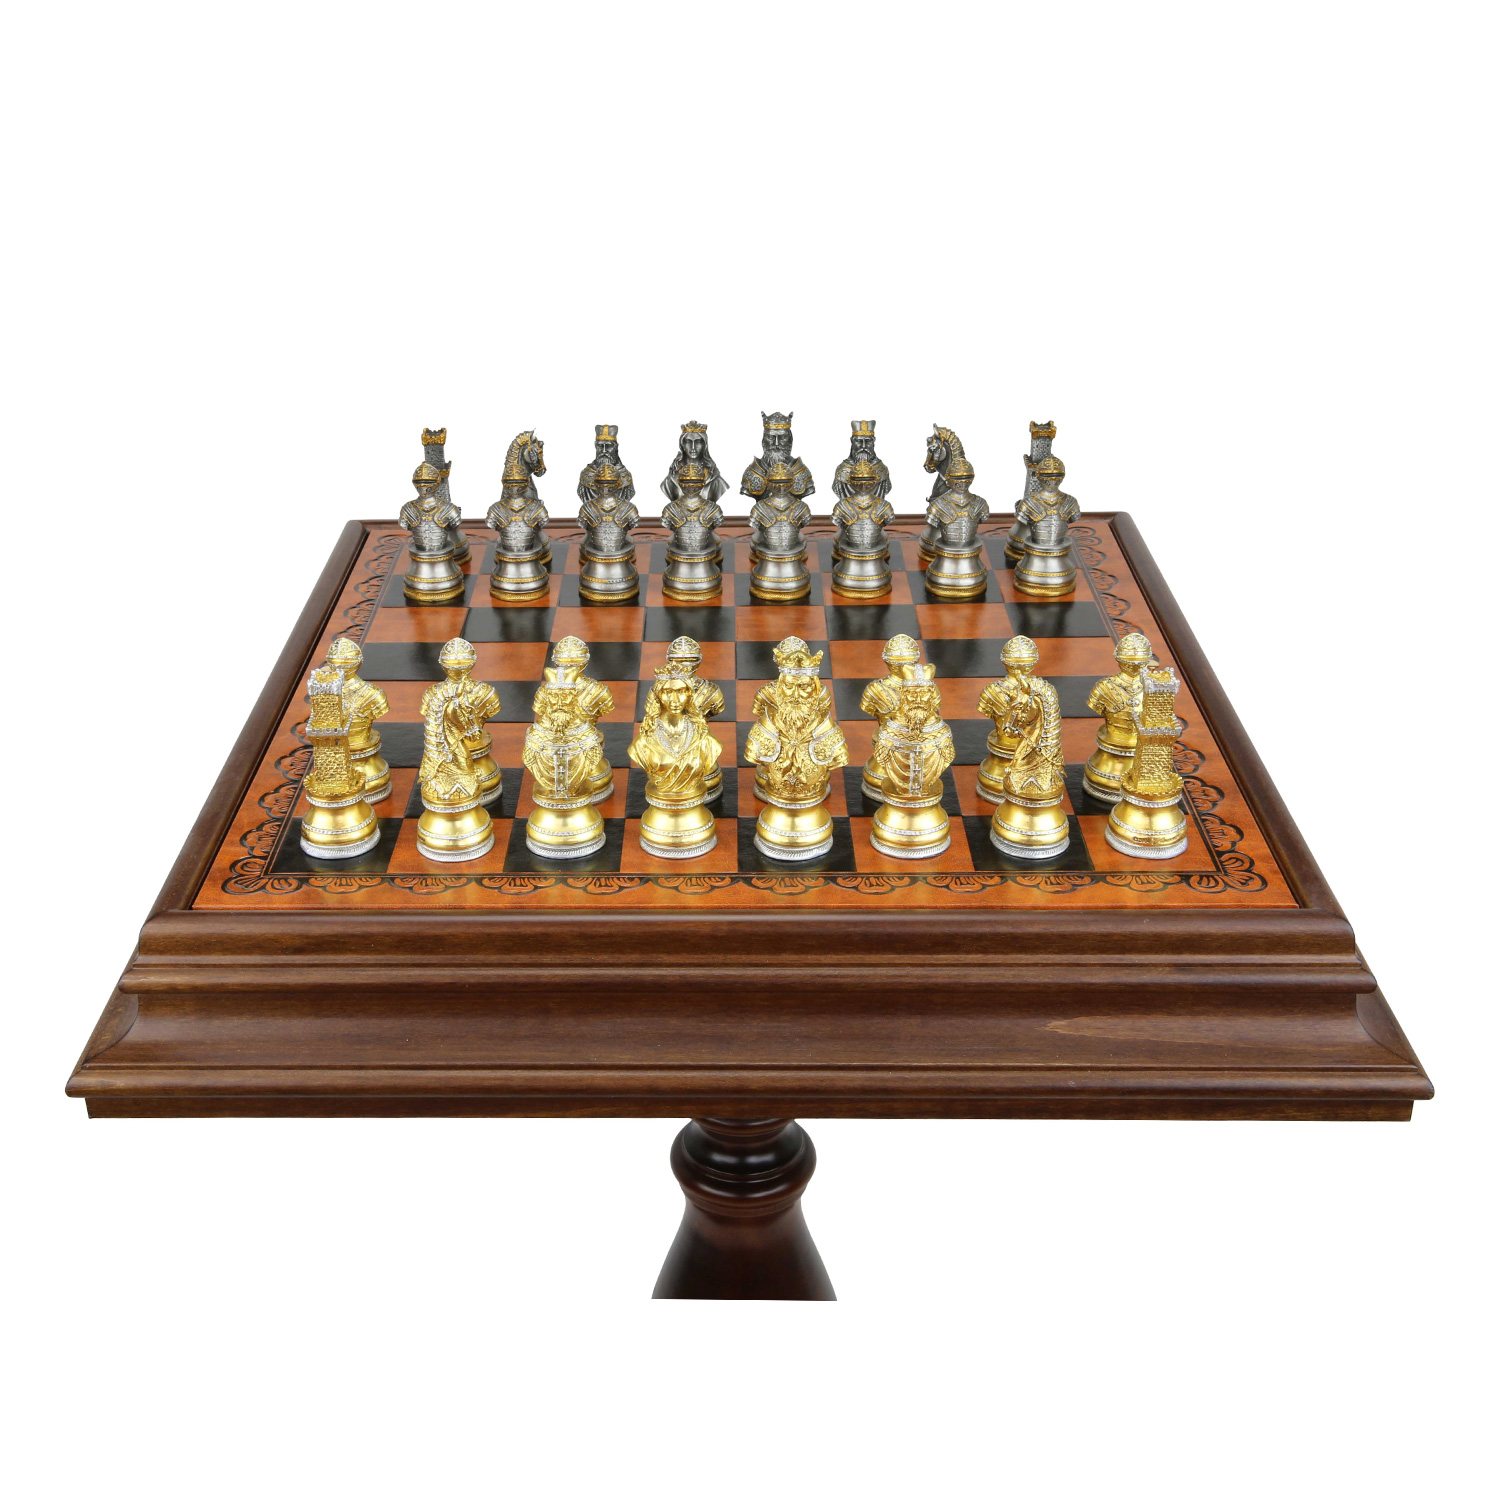 Bello Collezioni - Mancini 24K Gold/Silver Plated Luxury Chess Set